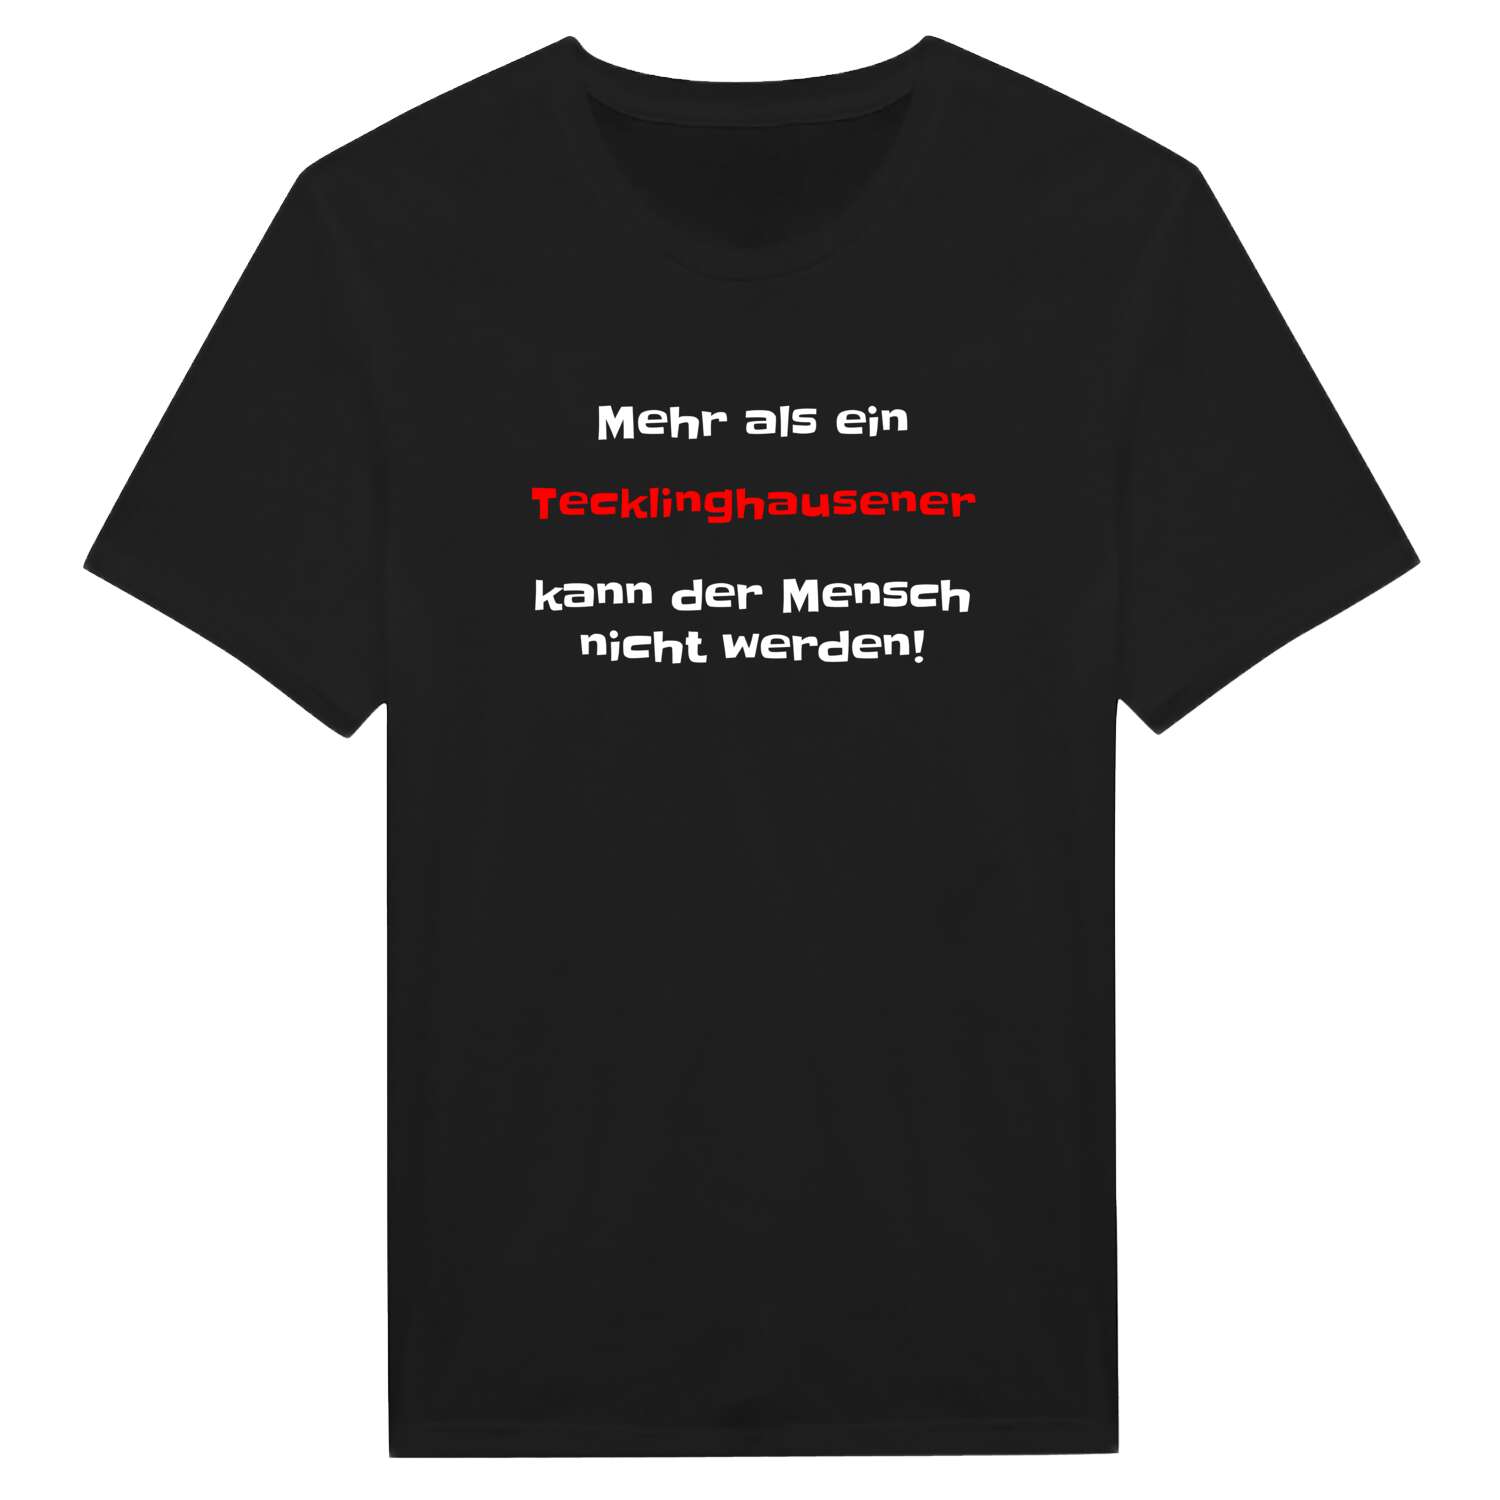 Tecklinghausen T-Shirt »Mehr als ein«